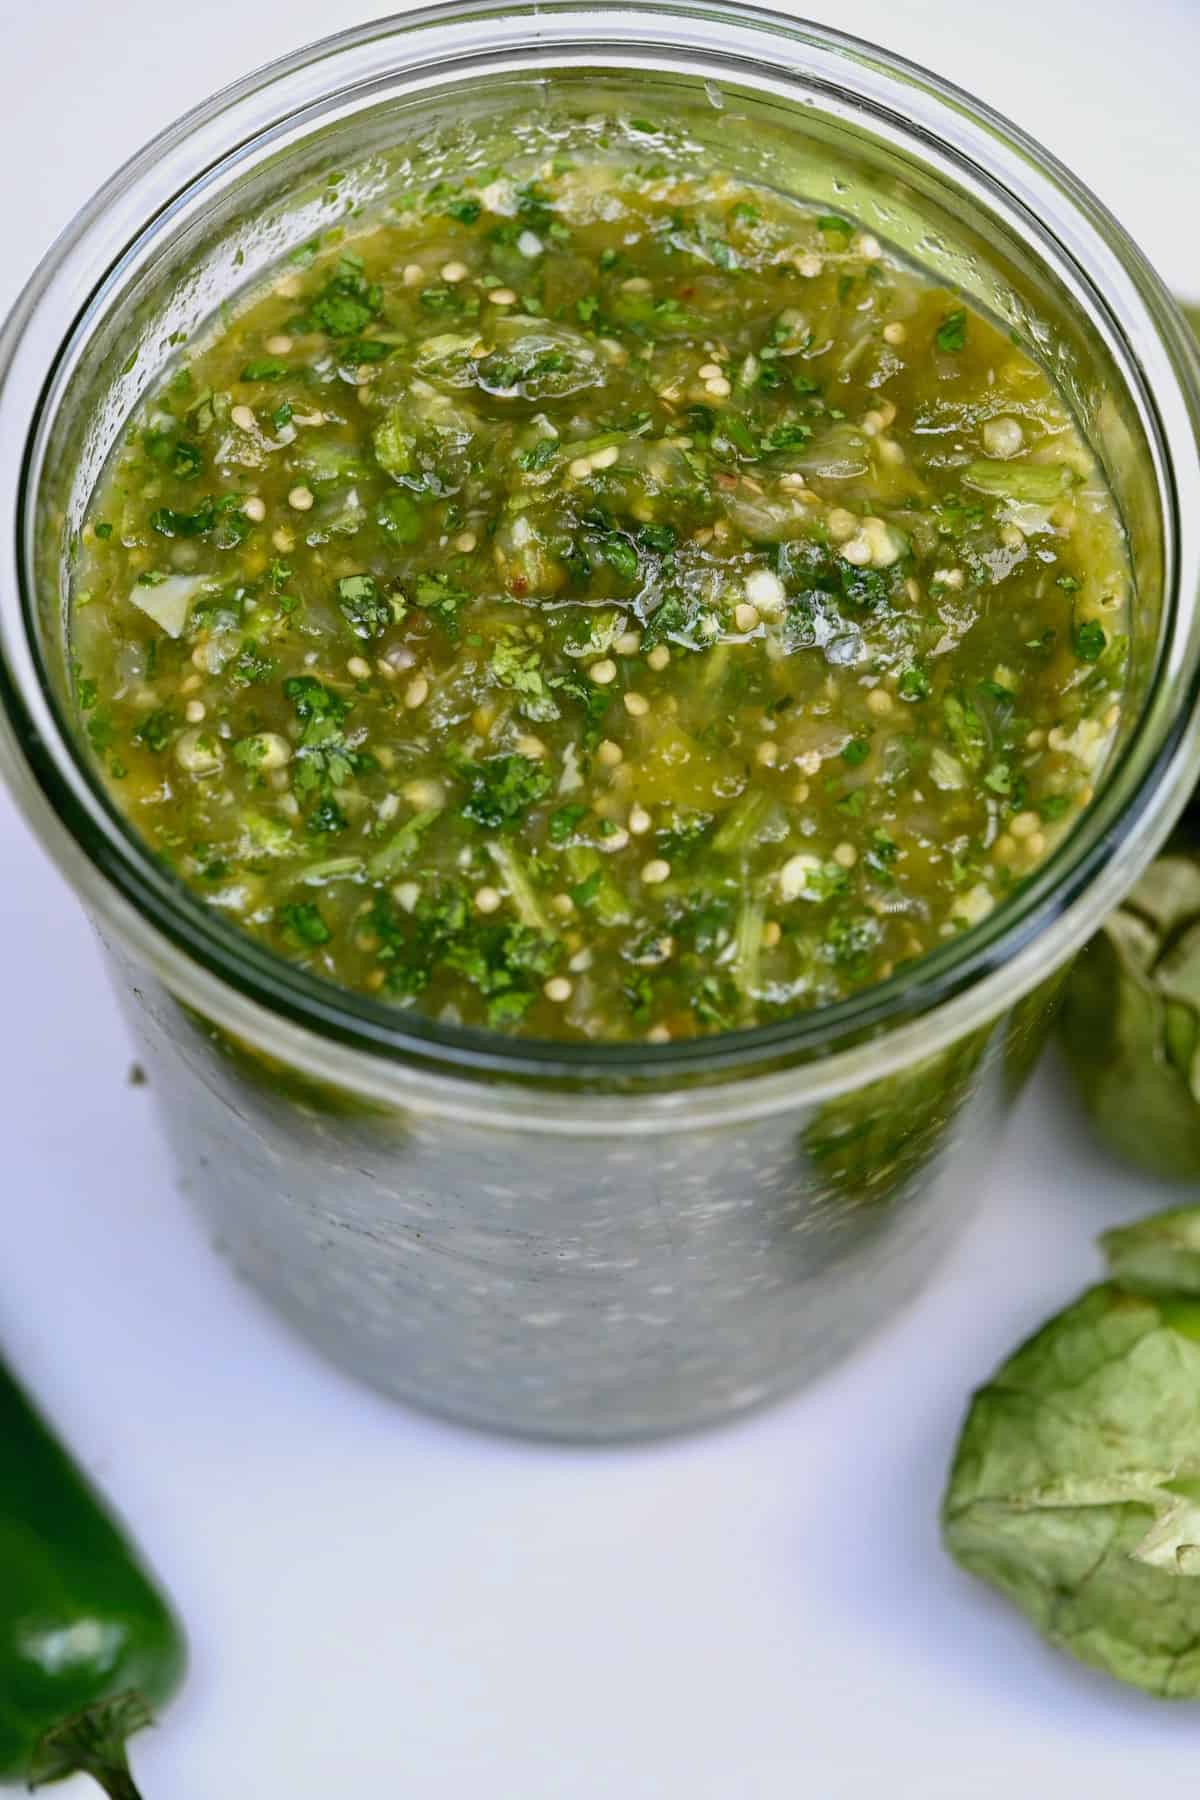 Salsa verde (tomatillo green chili salsa) in a jar